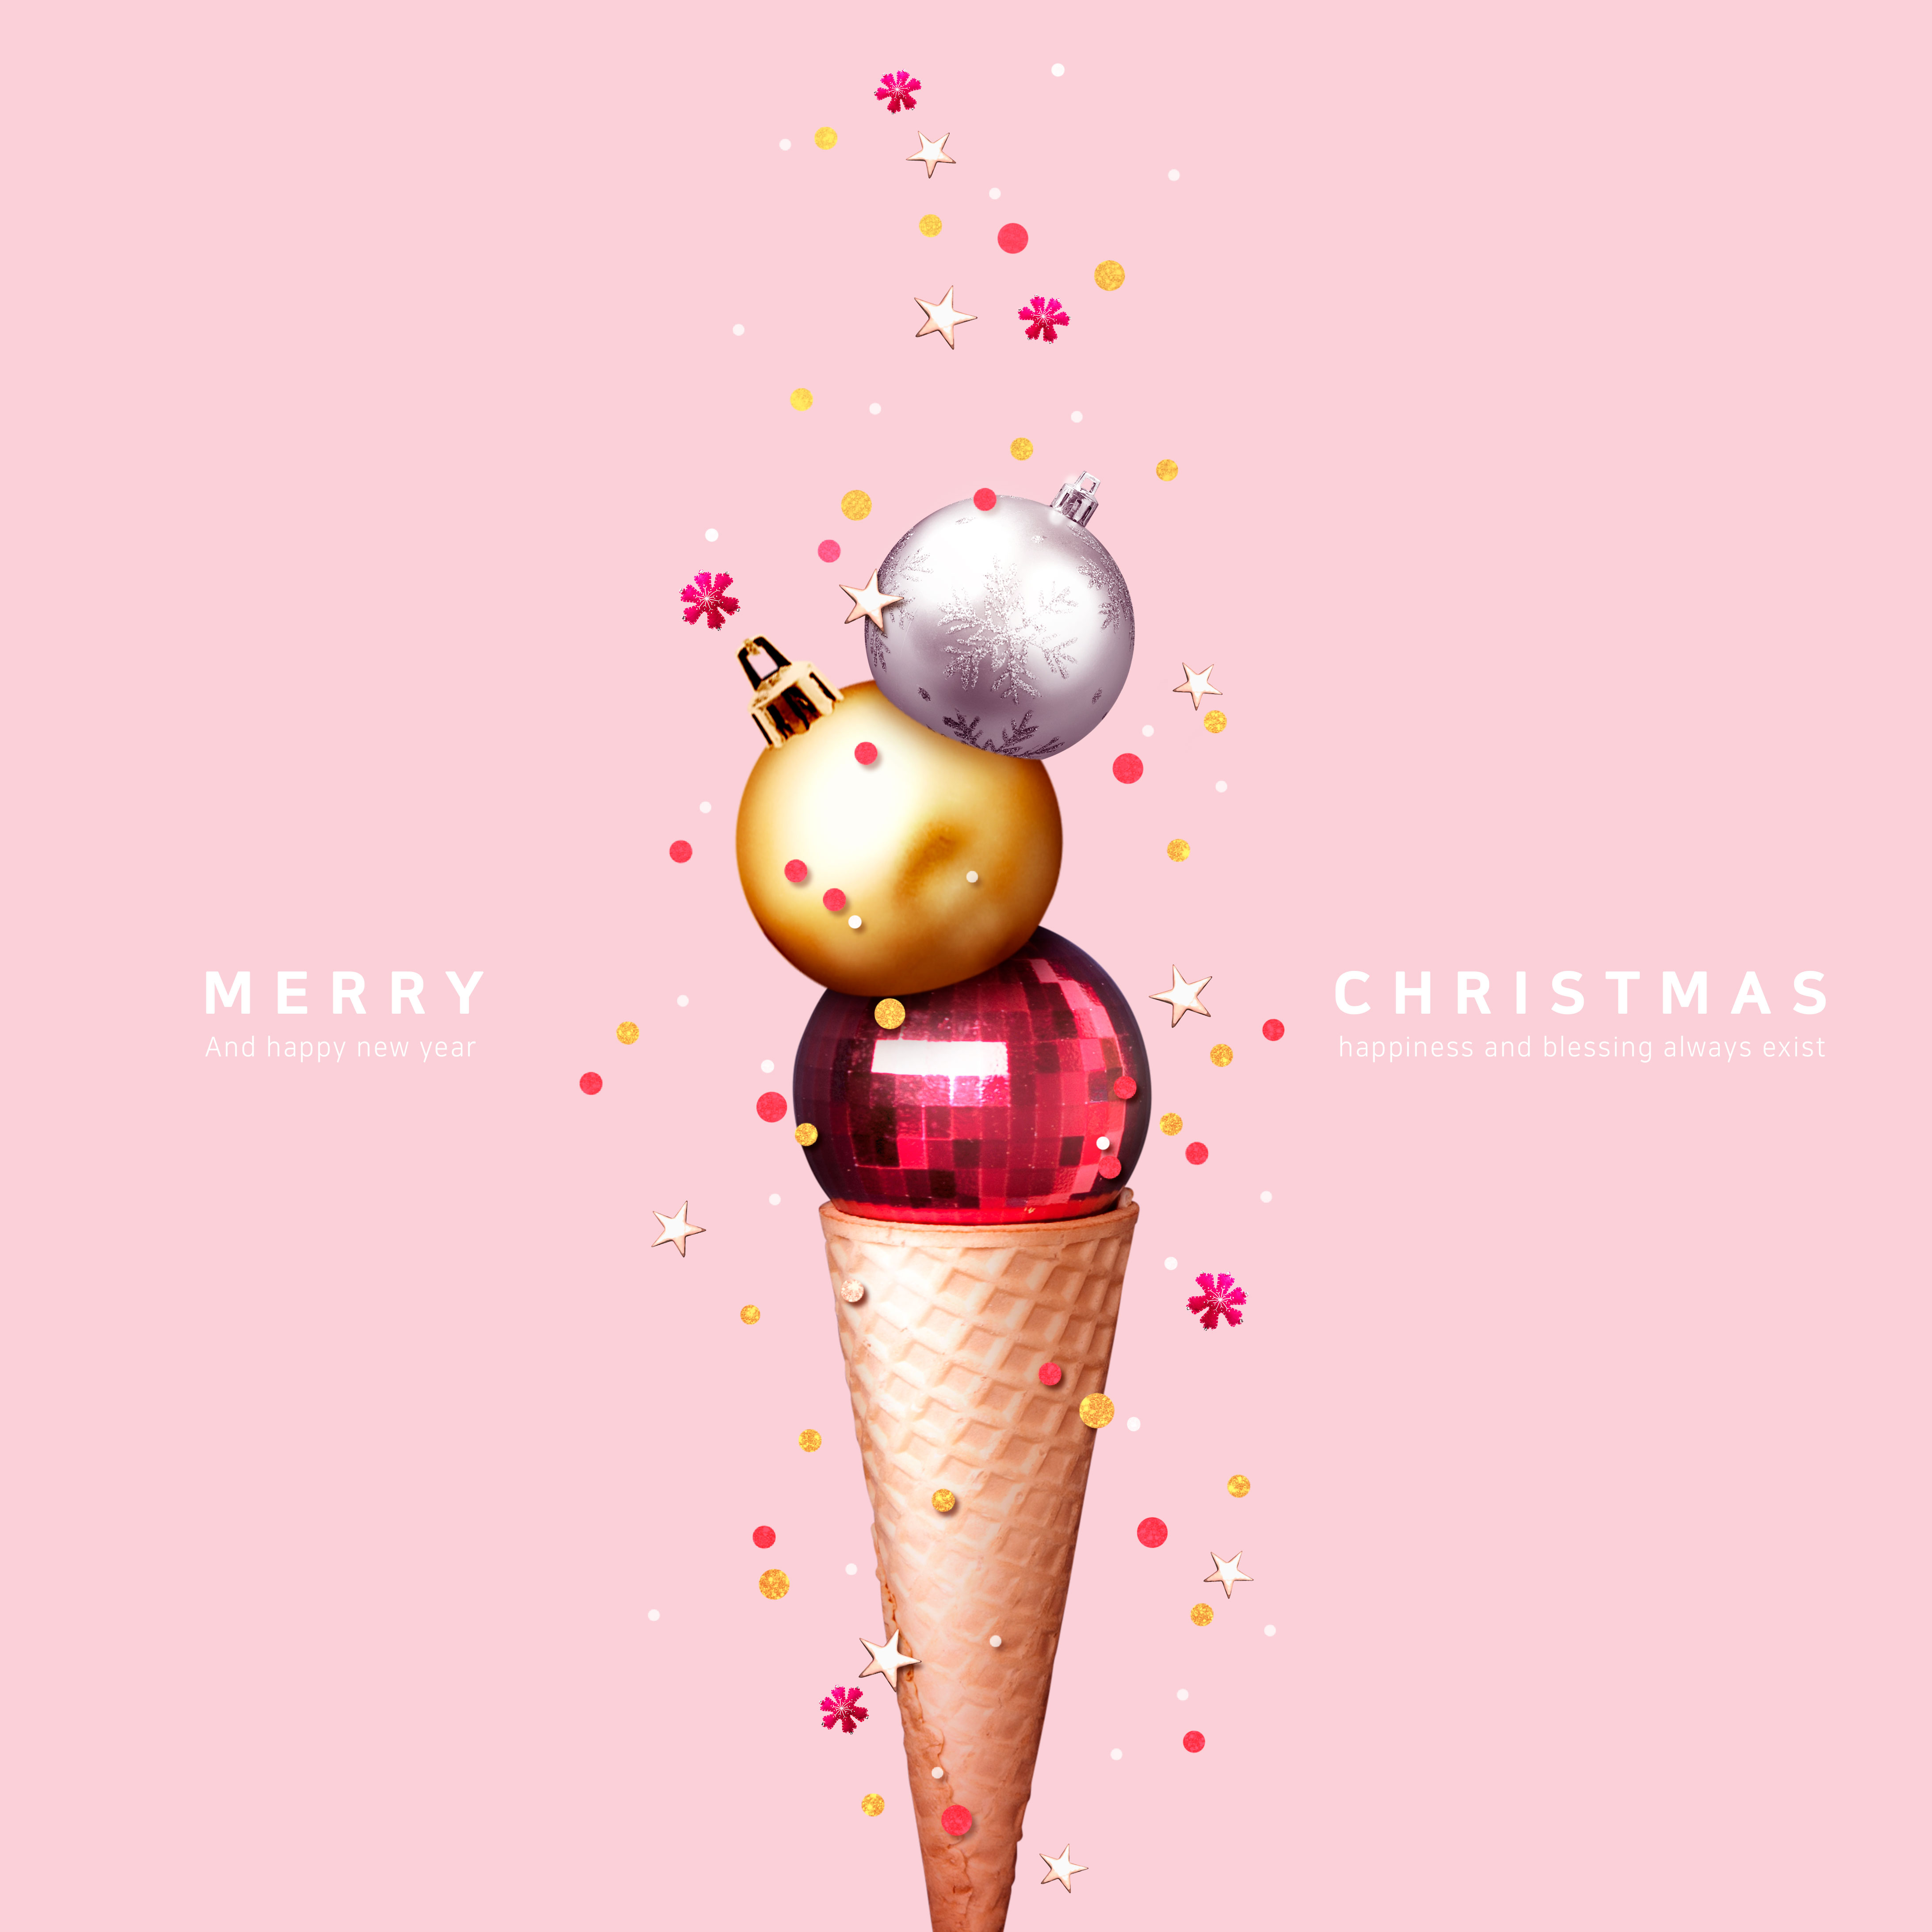 创意冰淇淋球圣诞节主题海报模板[PSD]插图